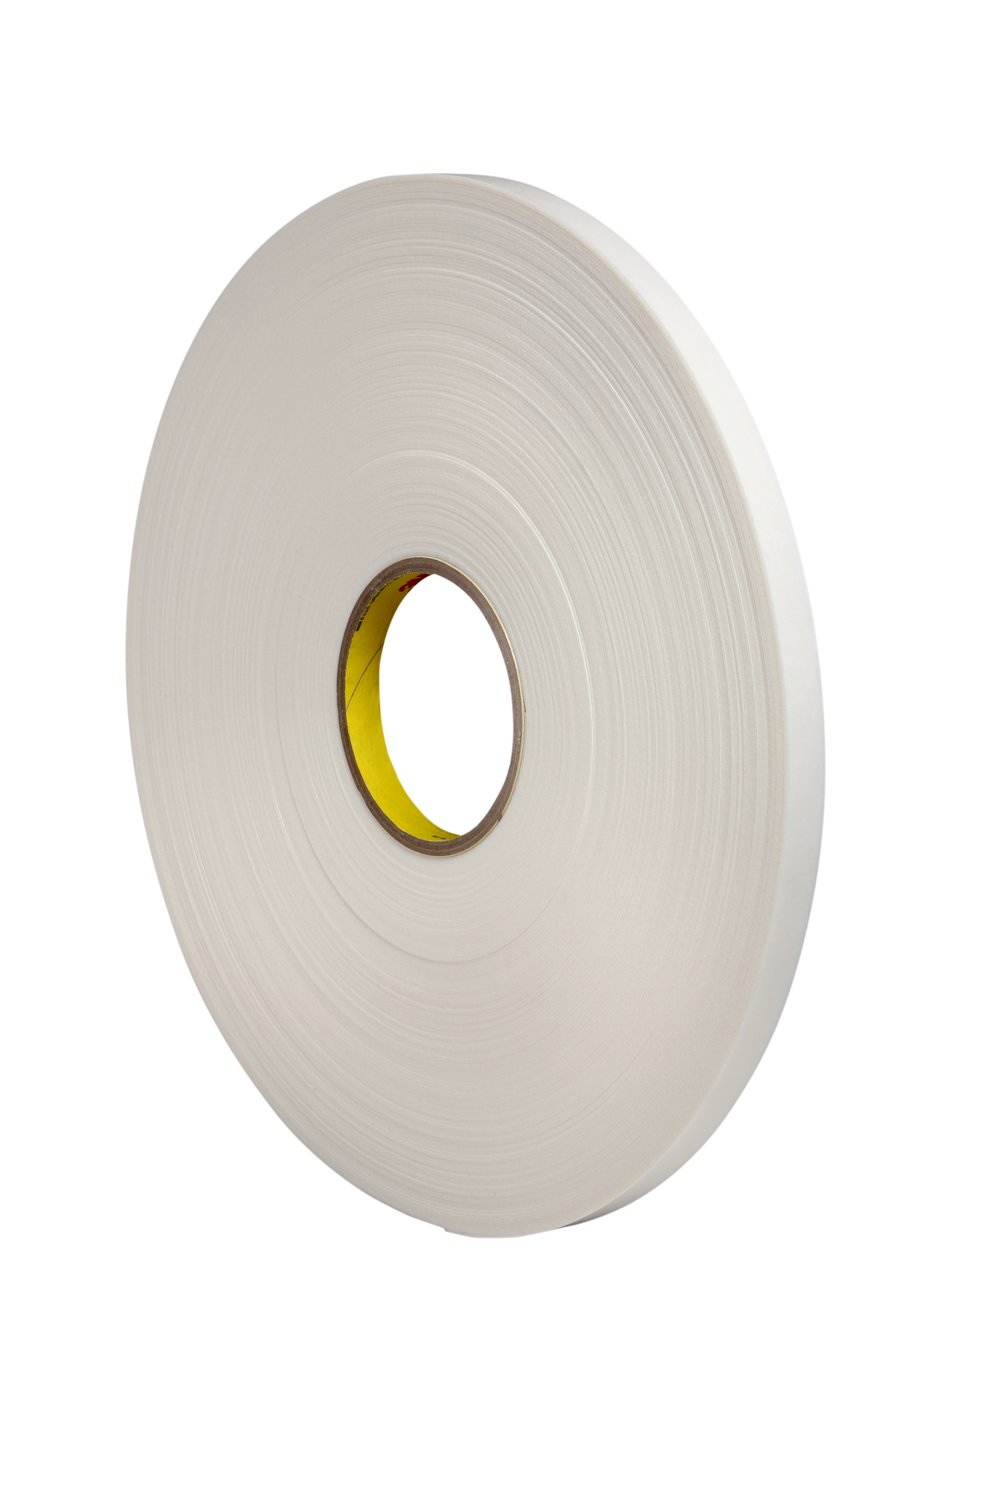 7010373741 - 3M Double Coated Polyethylene Foam Tape 4462, White, 3/8 in x 72 yd, 31
mil, 24 rolls per case